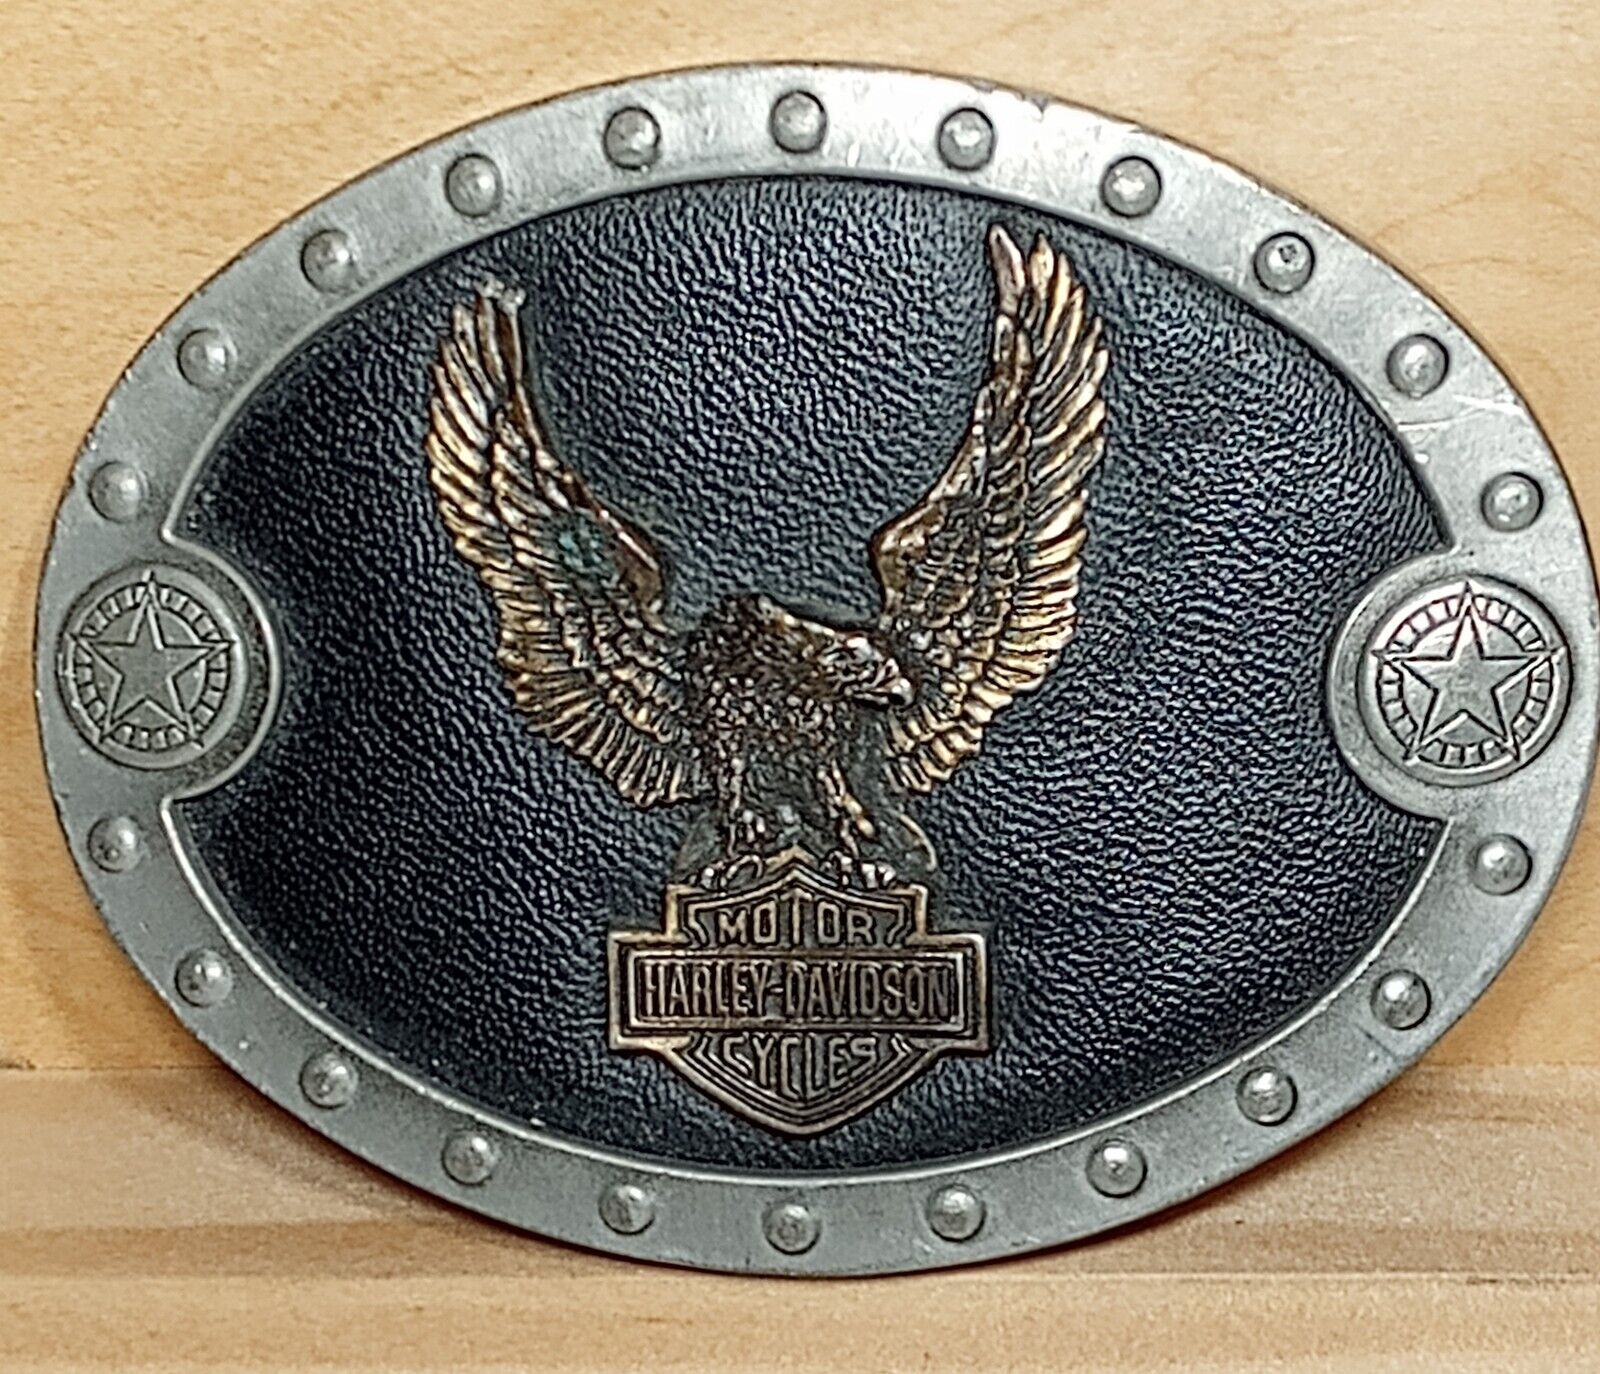 VTG 1996 USA  Harley Davidson Belt Buckle Screaming Eagle/2008 H-D Santa Fe Pin